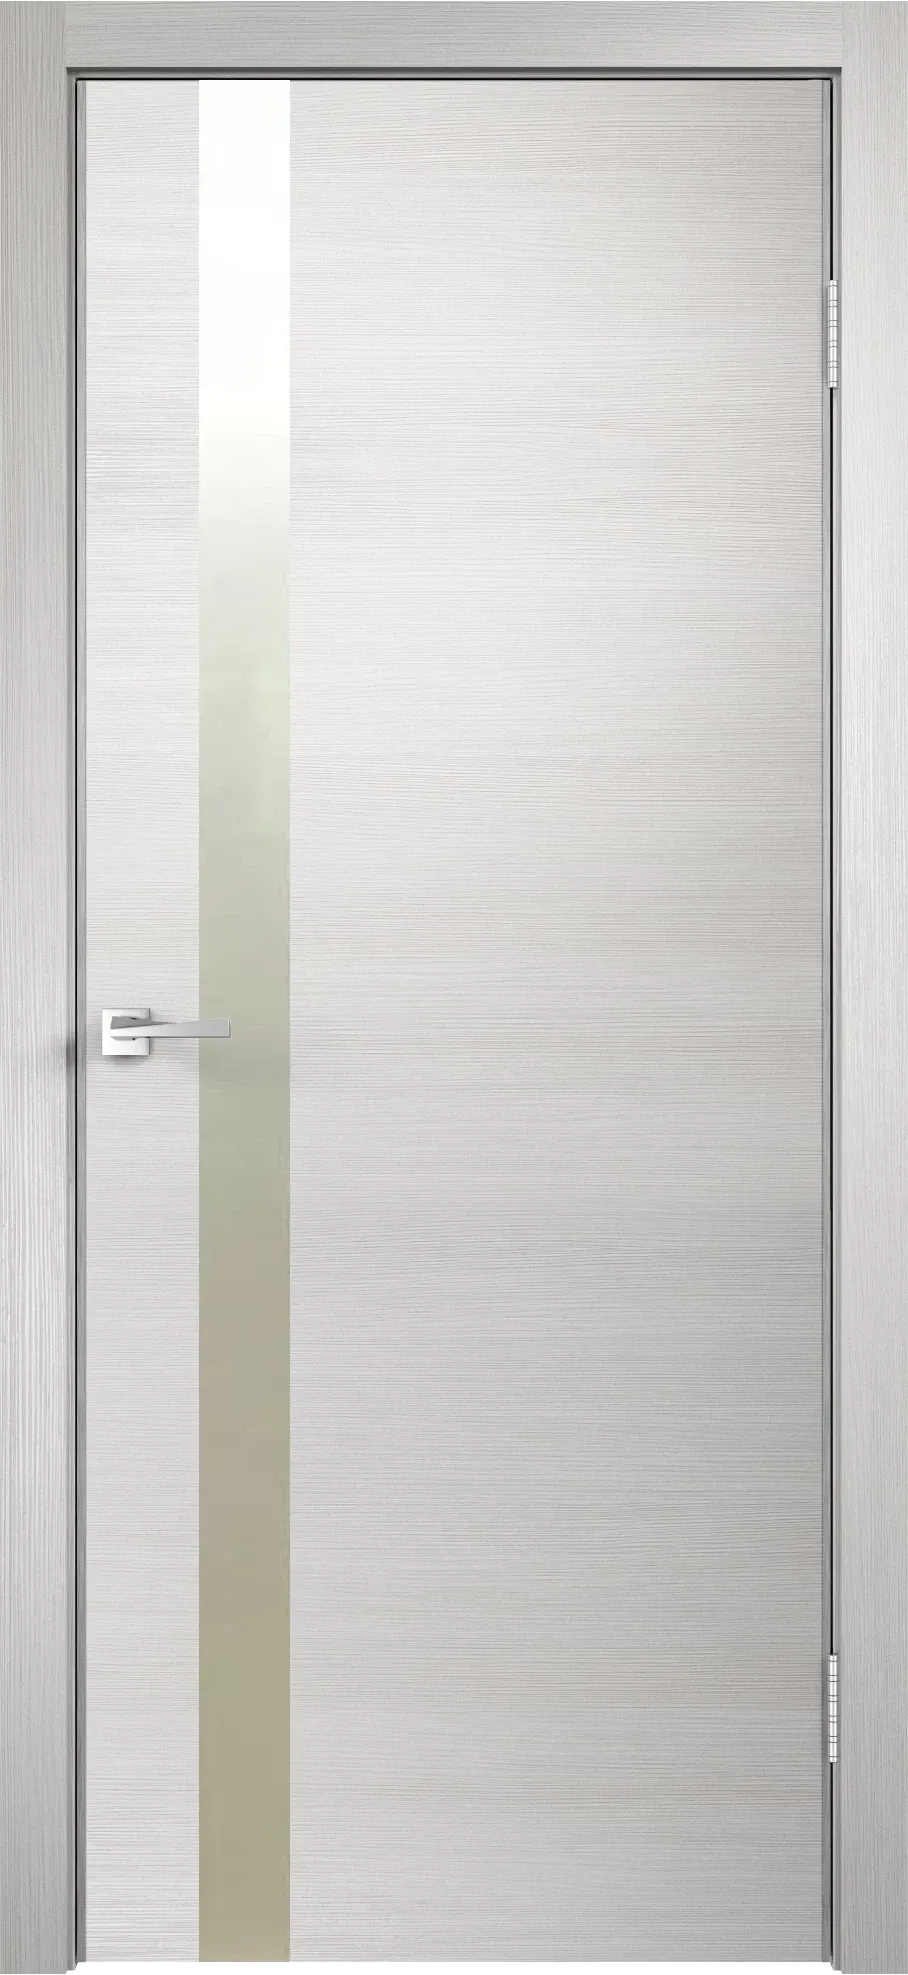 Velldoris межкомнатная дверь экошпон techno облегченное z1 дуб белый поперечный 800Х2000